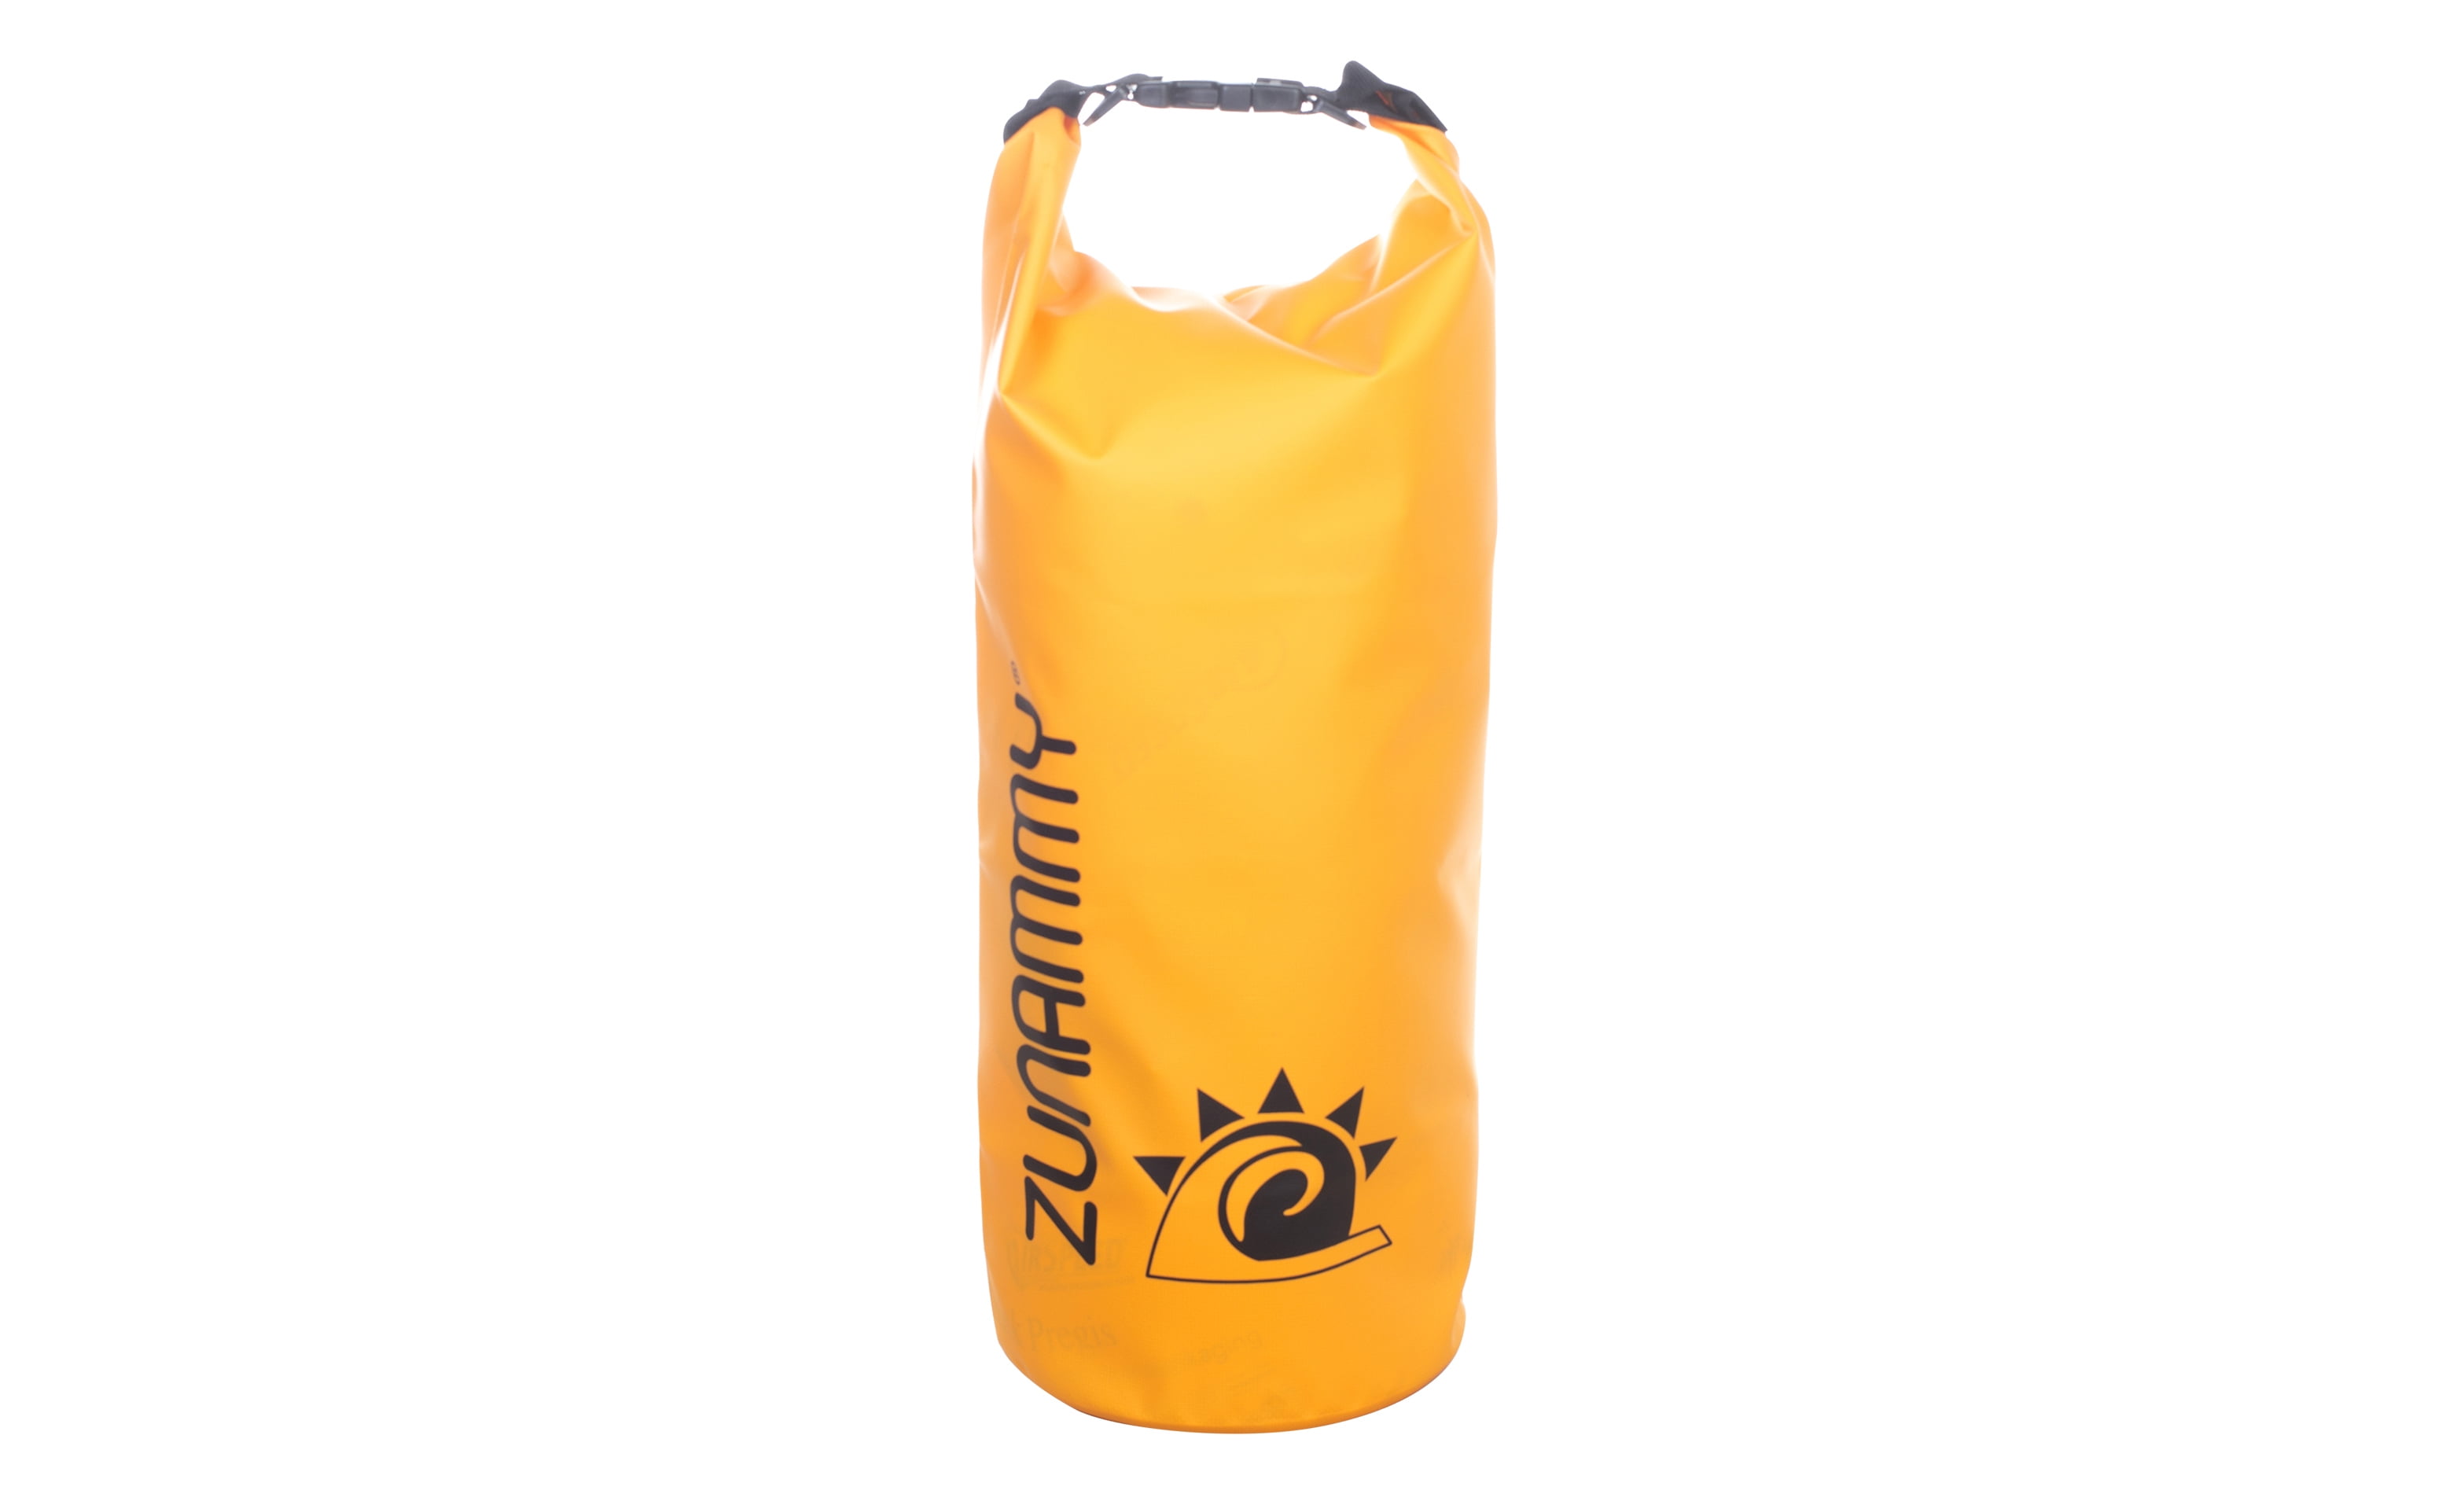 Waterproof Dry Floating Duffel Bag - 5/10/20 Liter (Yellow) - wcy.wat.edu.pl - wcy.wat.edu.pl